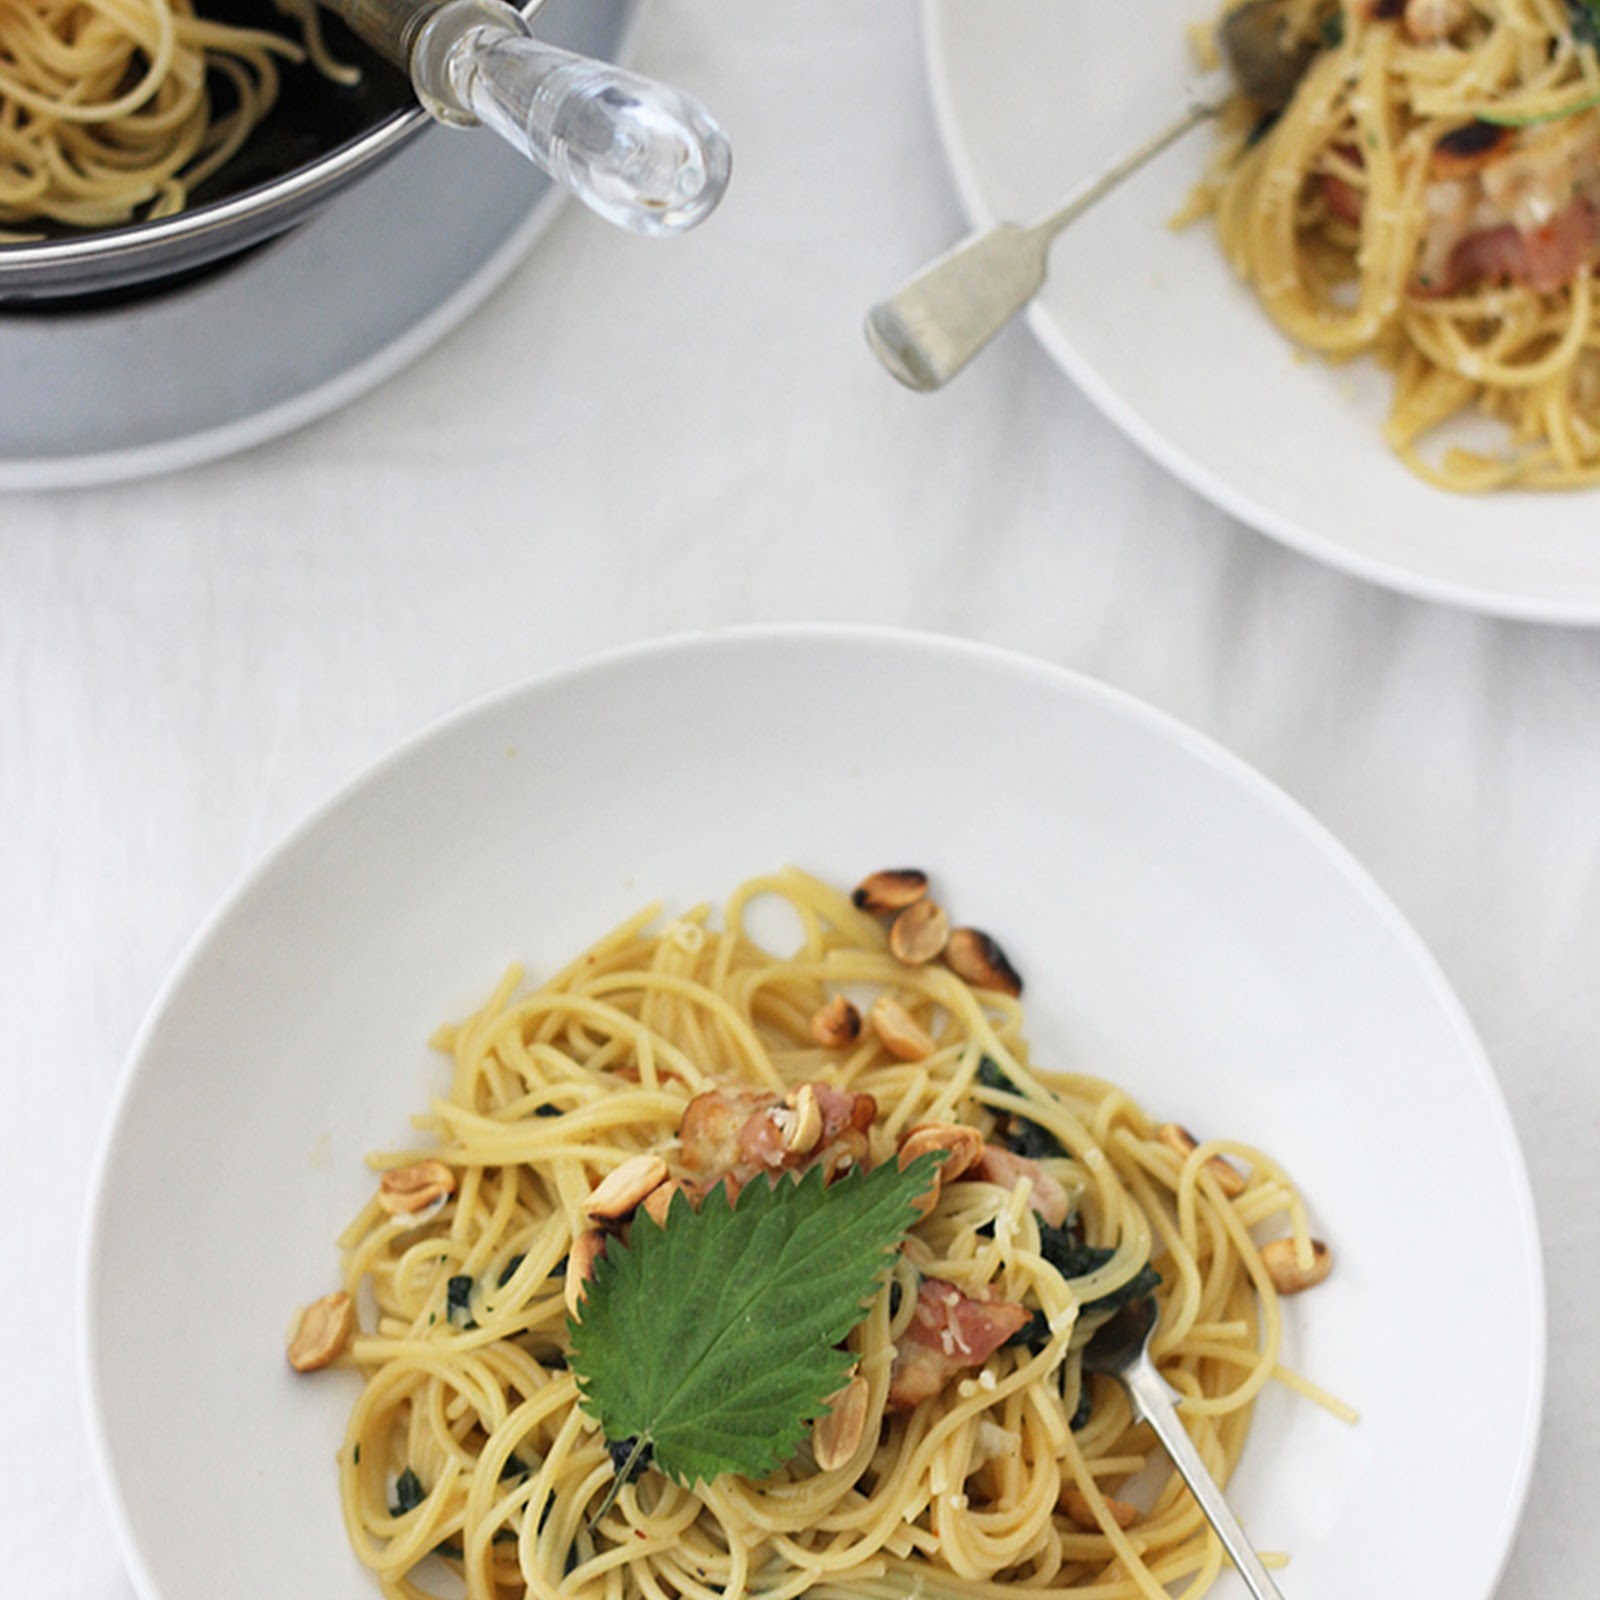 Sezon na pokrzywę: Spaghetti carbonara z pokrzywą i boczkiem